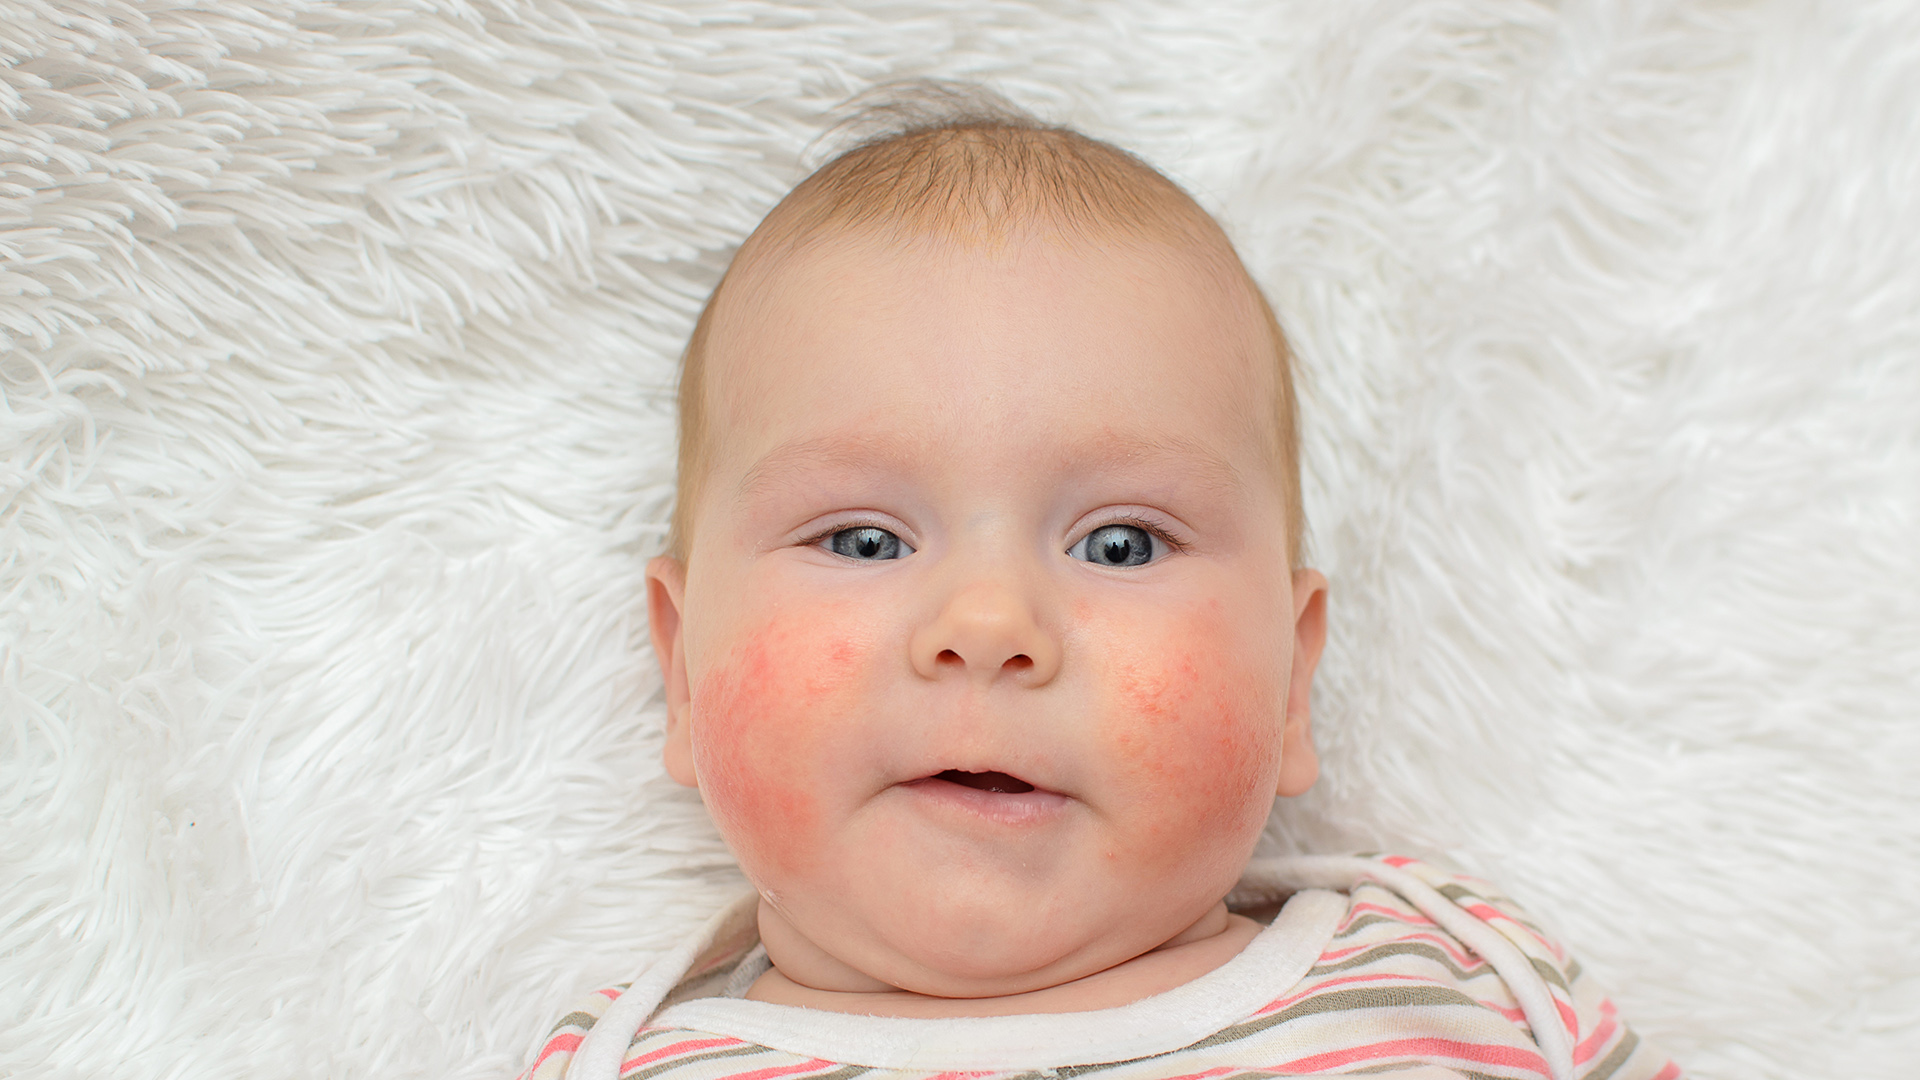 La alergia a la leche afecta principalmente a los niños (Shutterstock)